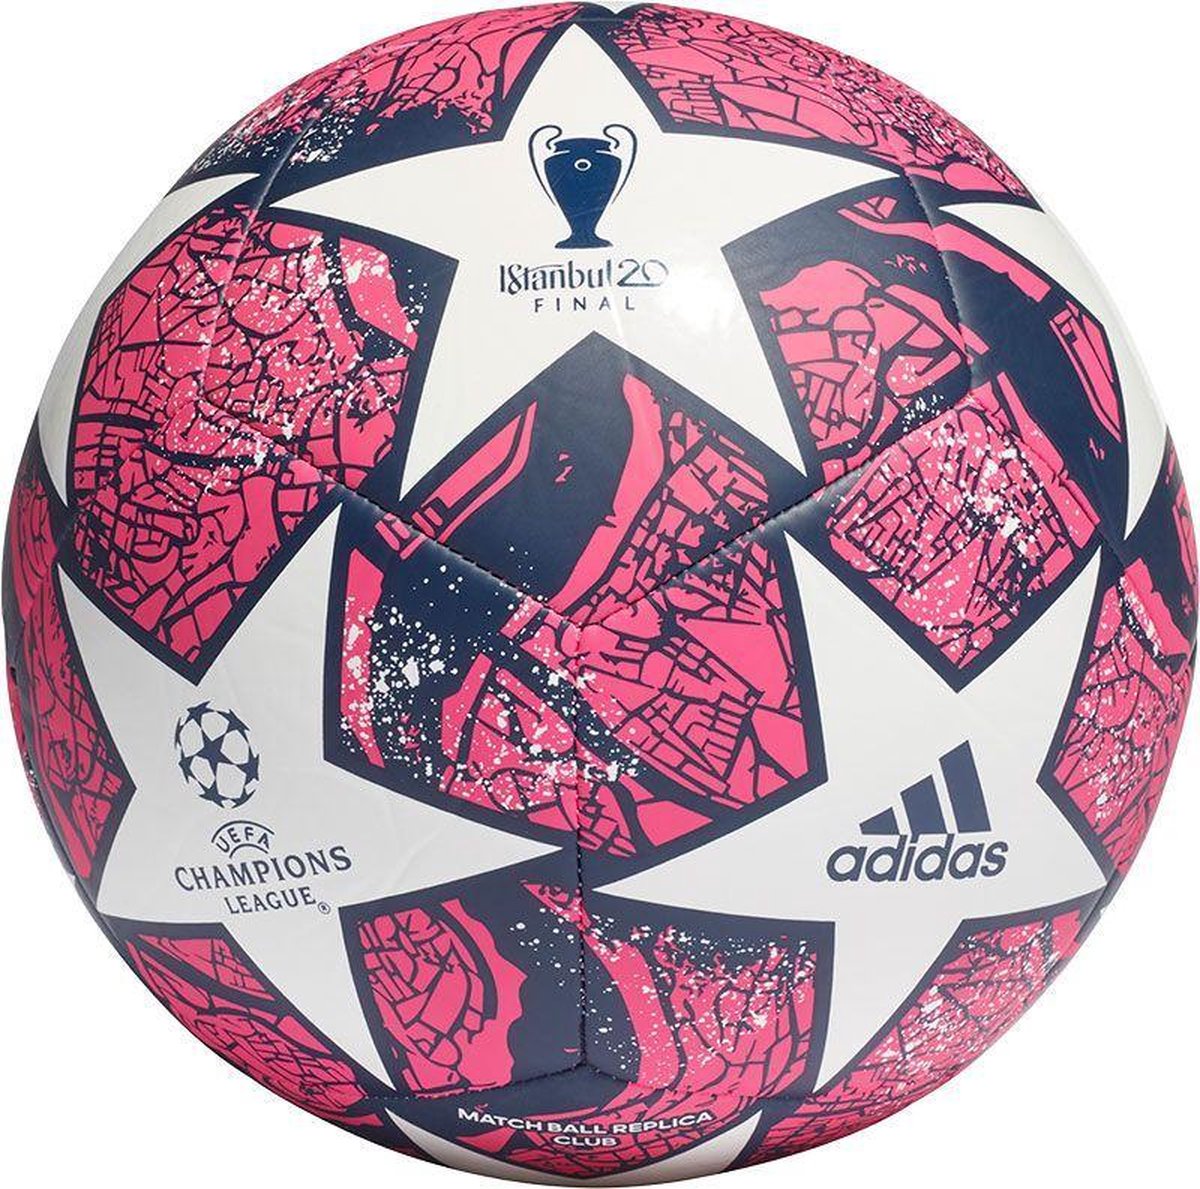 Ligue des Champions : Adidas dévoile Istanbul 2020 le ballon de la finale.